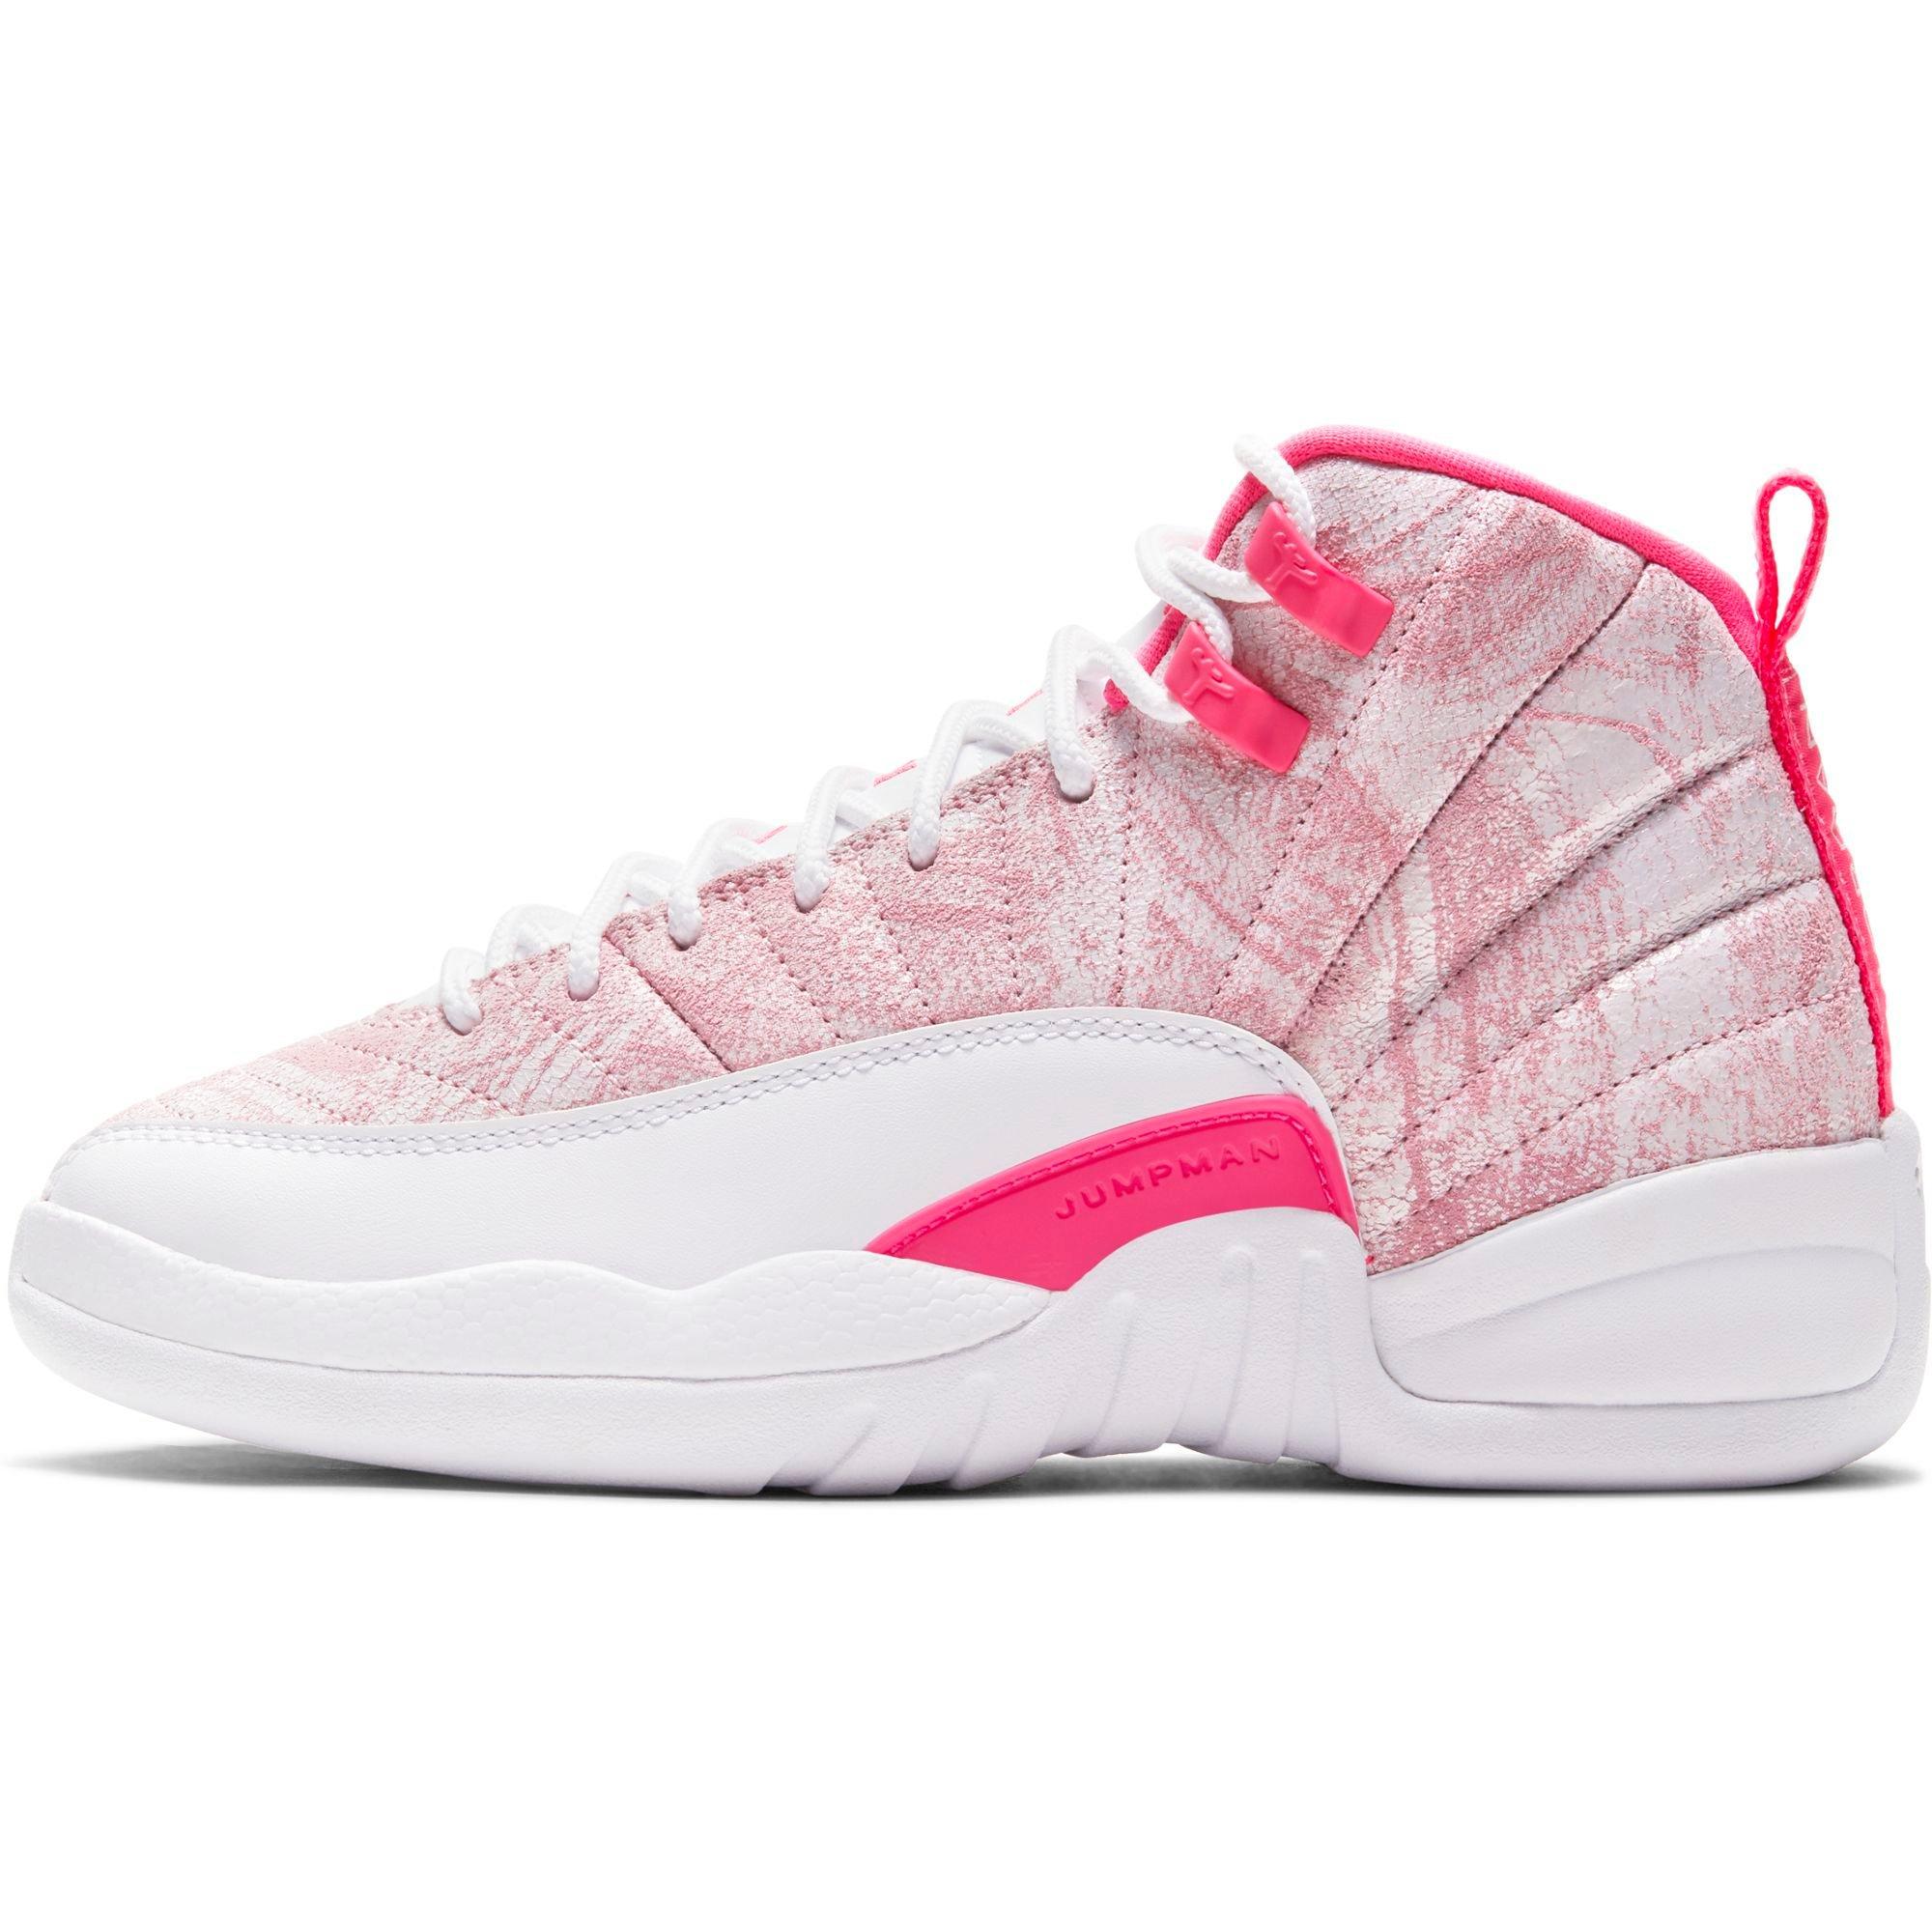 white and pink jordan 12